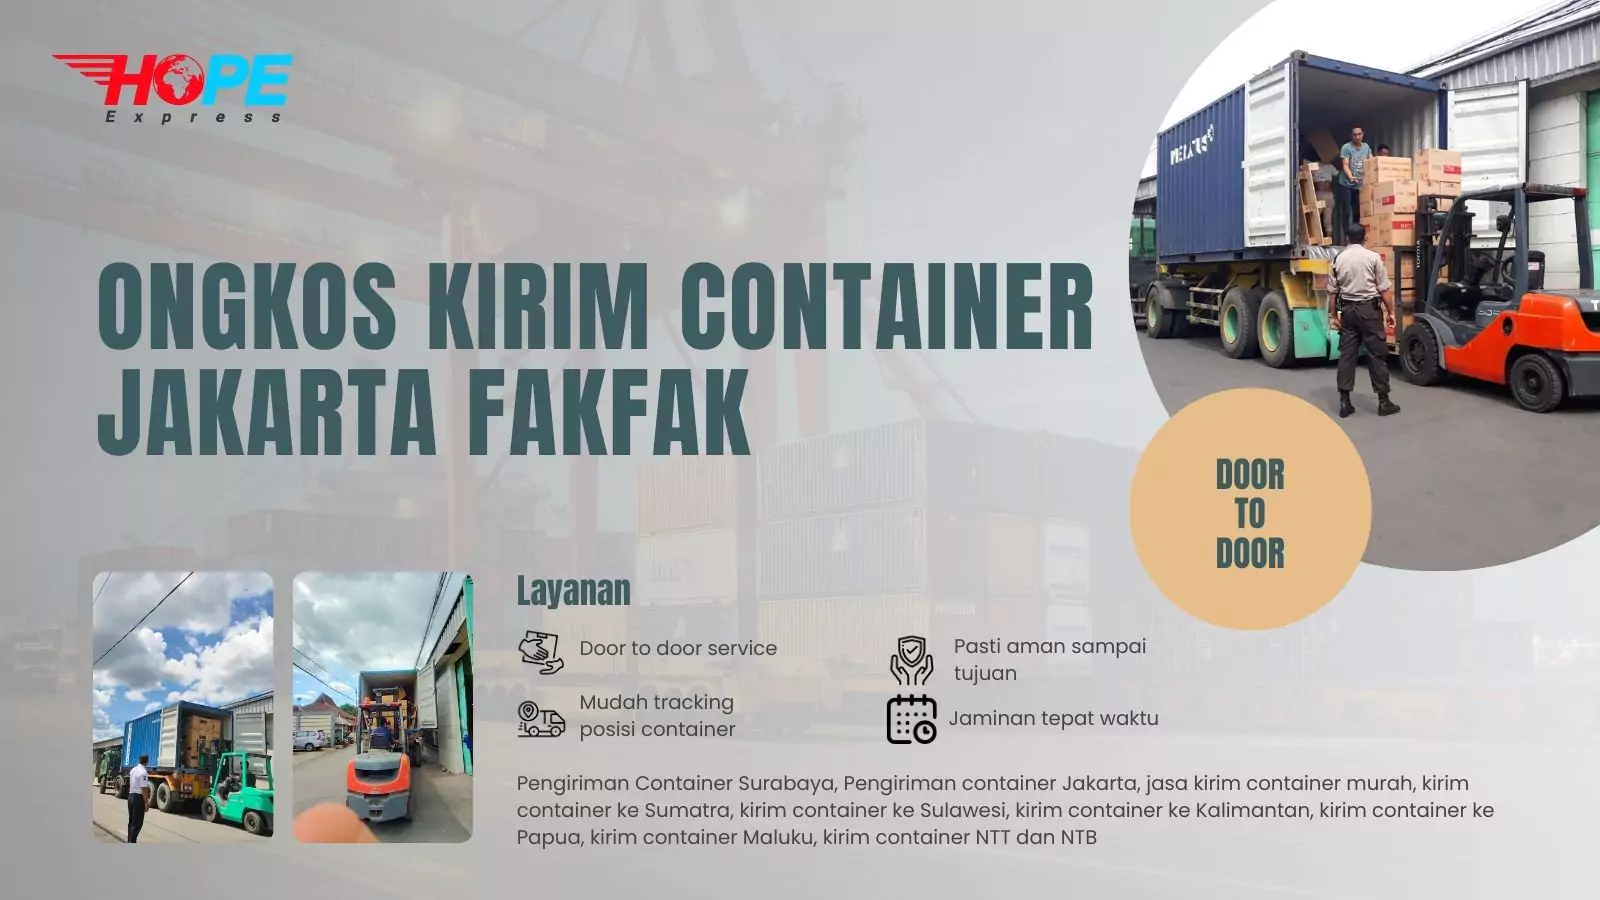 Ongkos Kirim Container Jakarta Fakfak